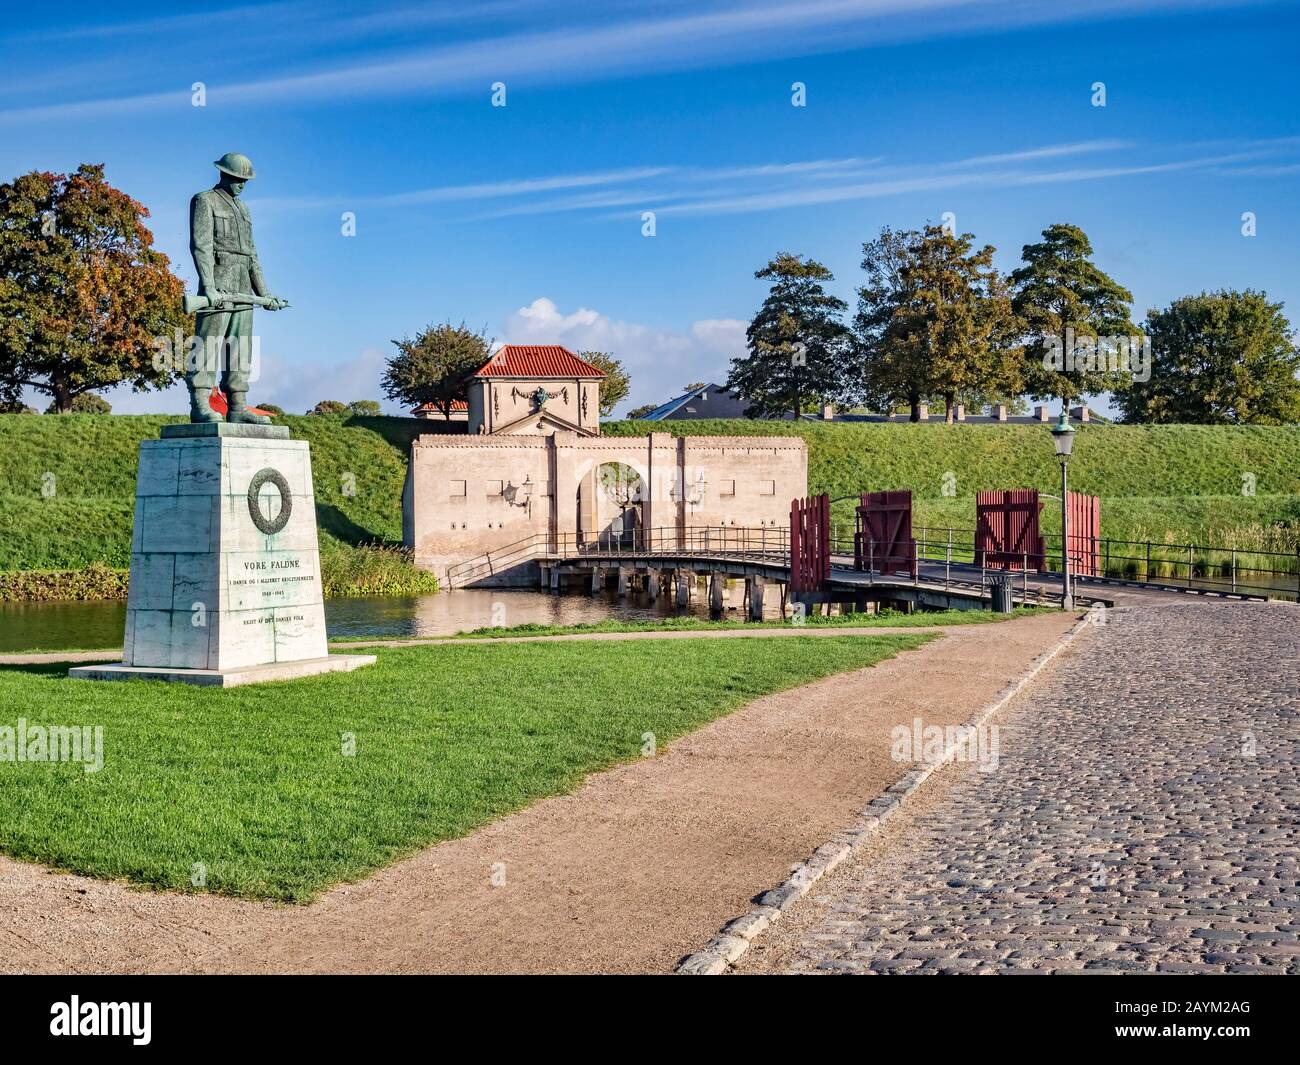 23. September 2018: Kopenhagen, Dänemark - Das Kriegsdenkmal am Eingang von Kastellet, einer Festung aus dem 17. Jahrhundert, die noch ein aktives Militär ist... Stockfoto